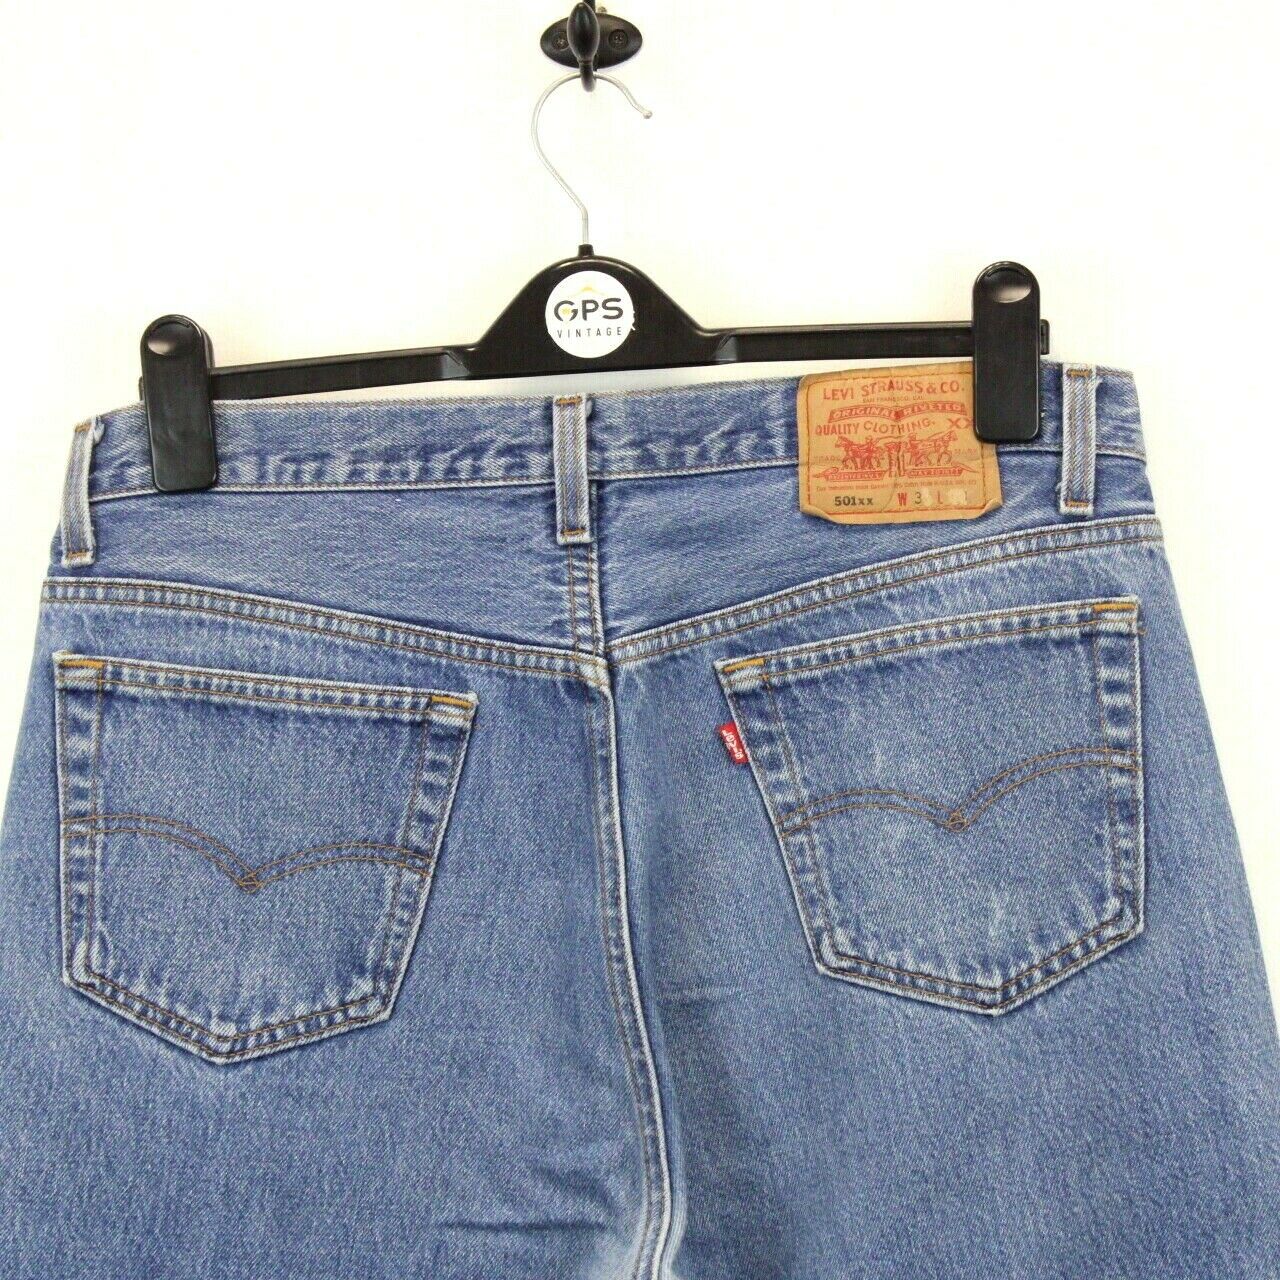 LEVIS 501 XX Jeans Light Blue | W34 L28